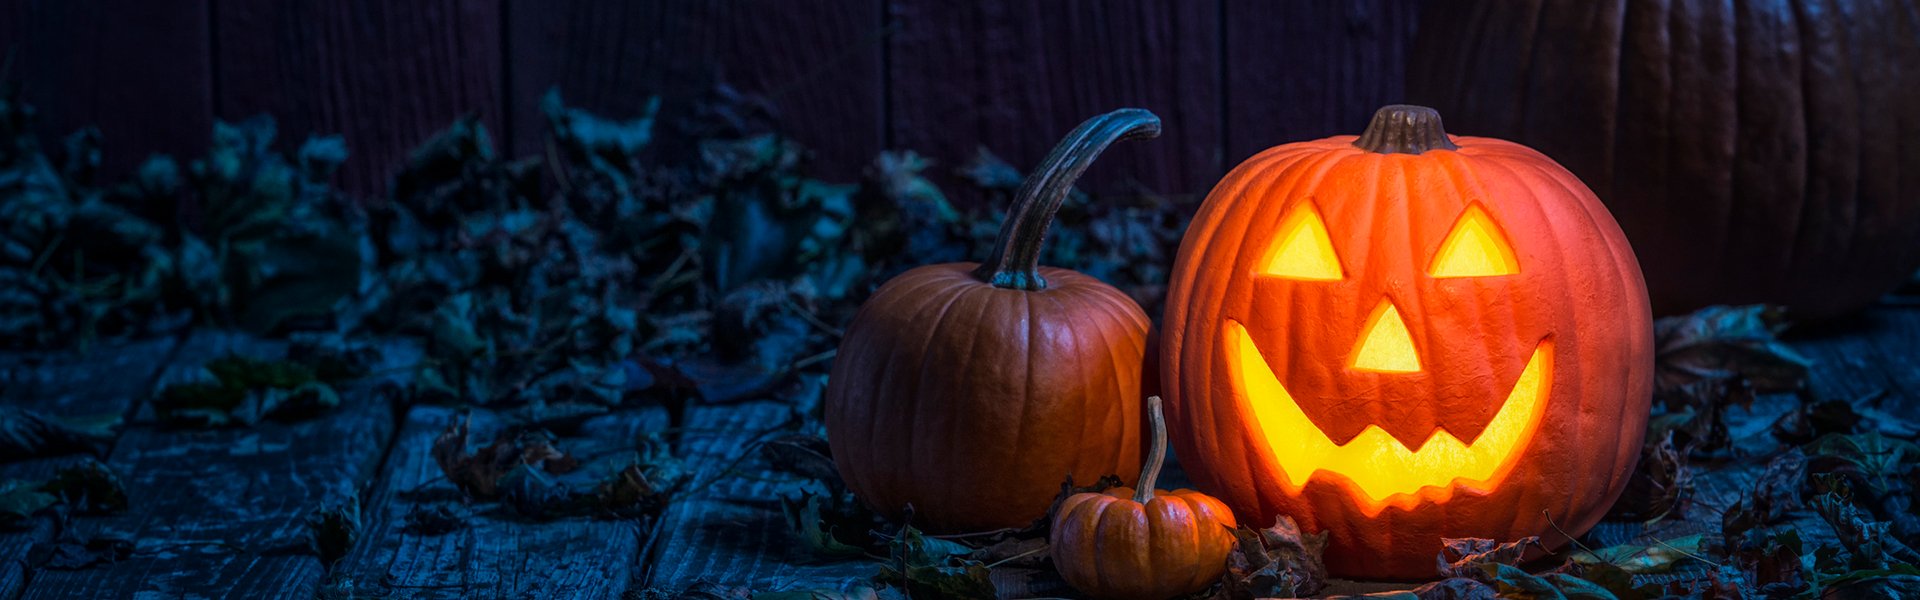 halloween-pumpkin-1920x600